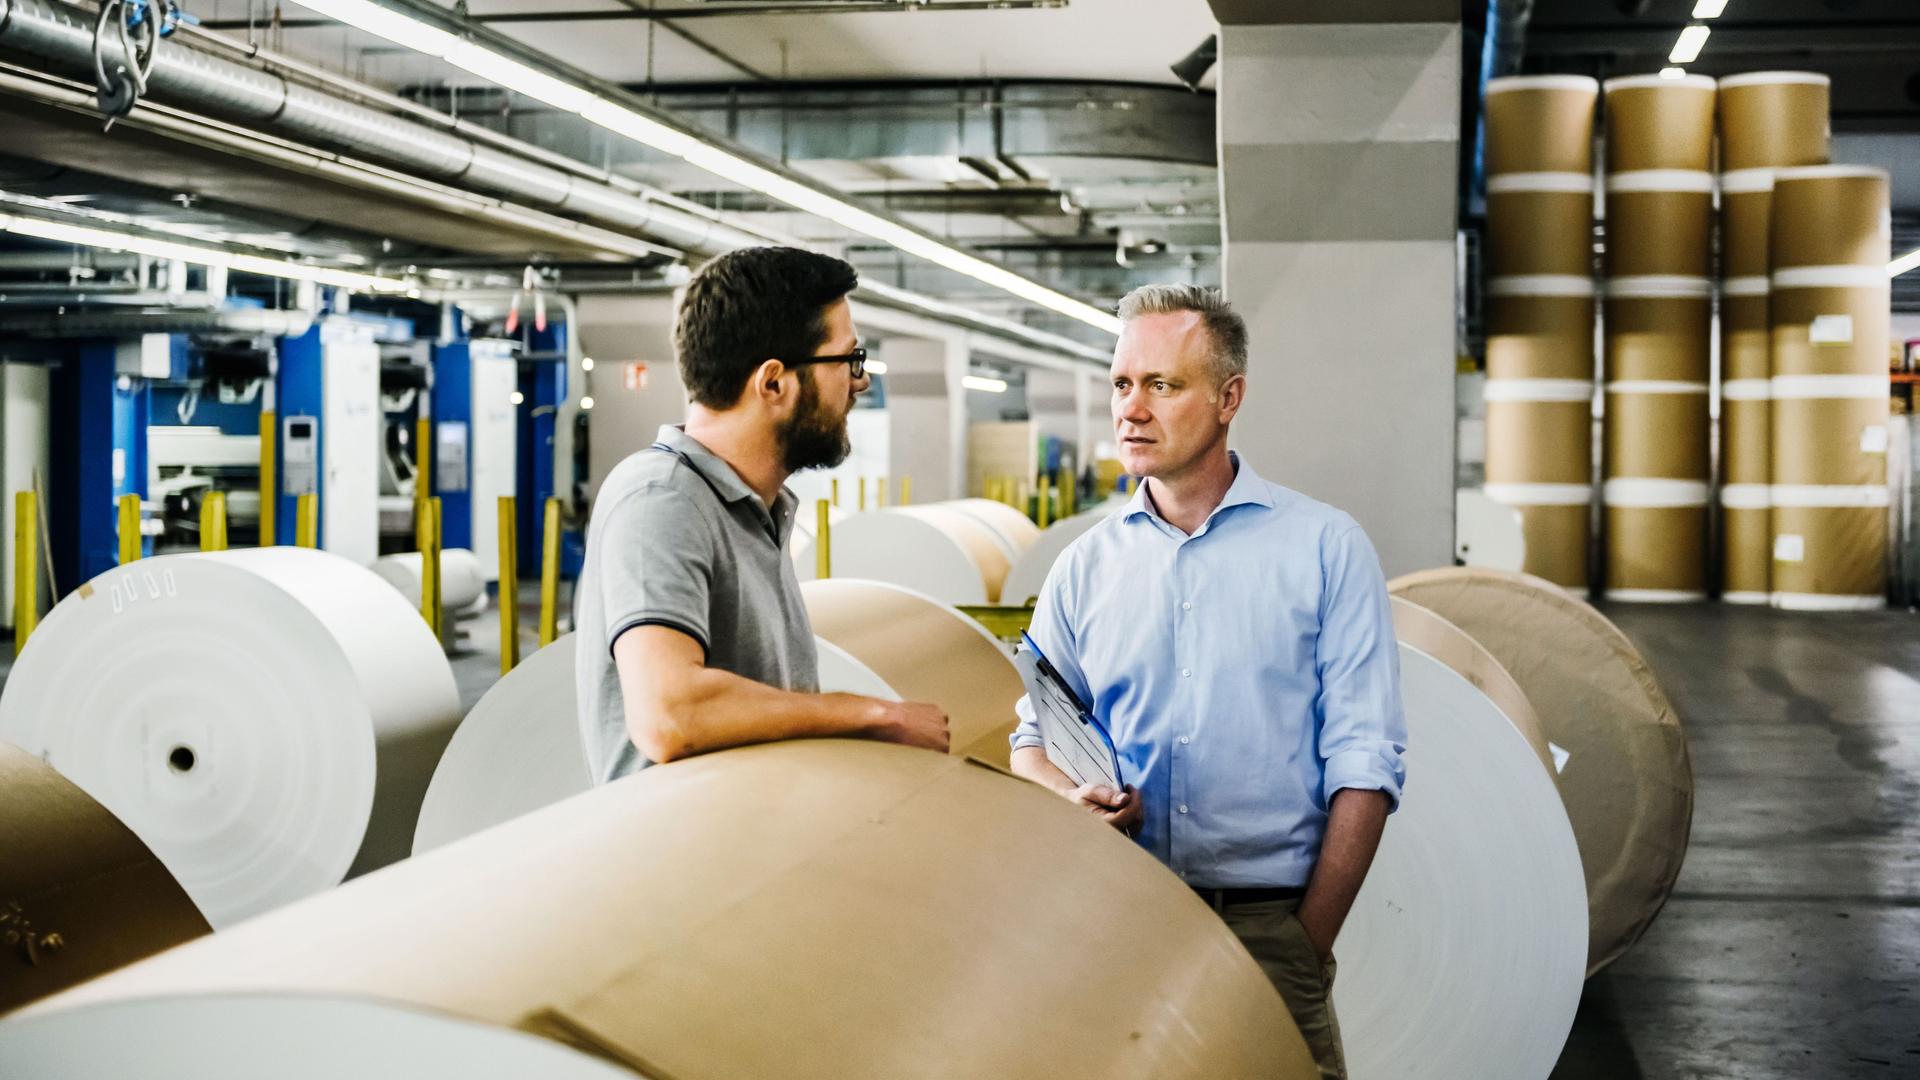 Zwei Männer unterhalten sich in einer Papierfabrik. Im Hintergrund stehen Papierrollen.